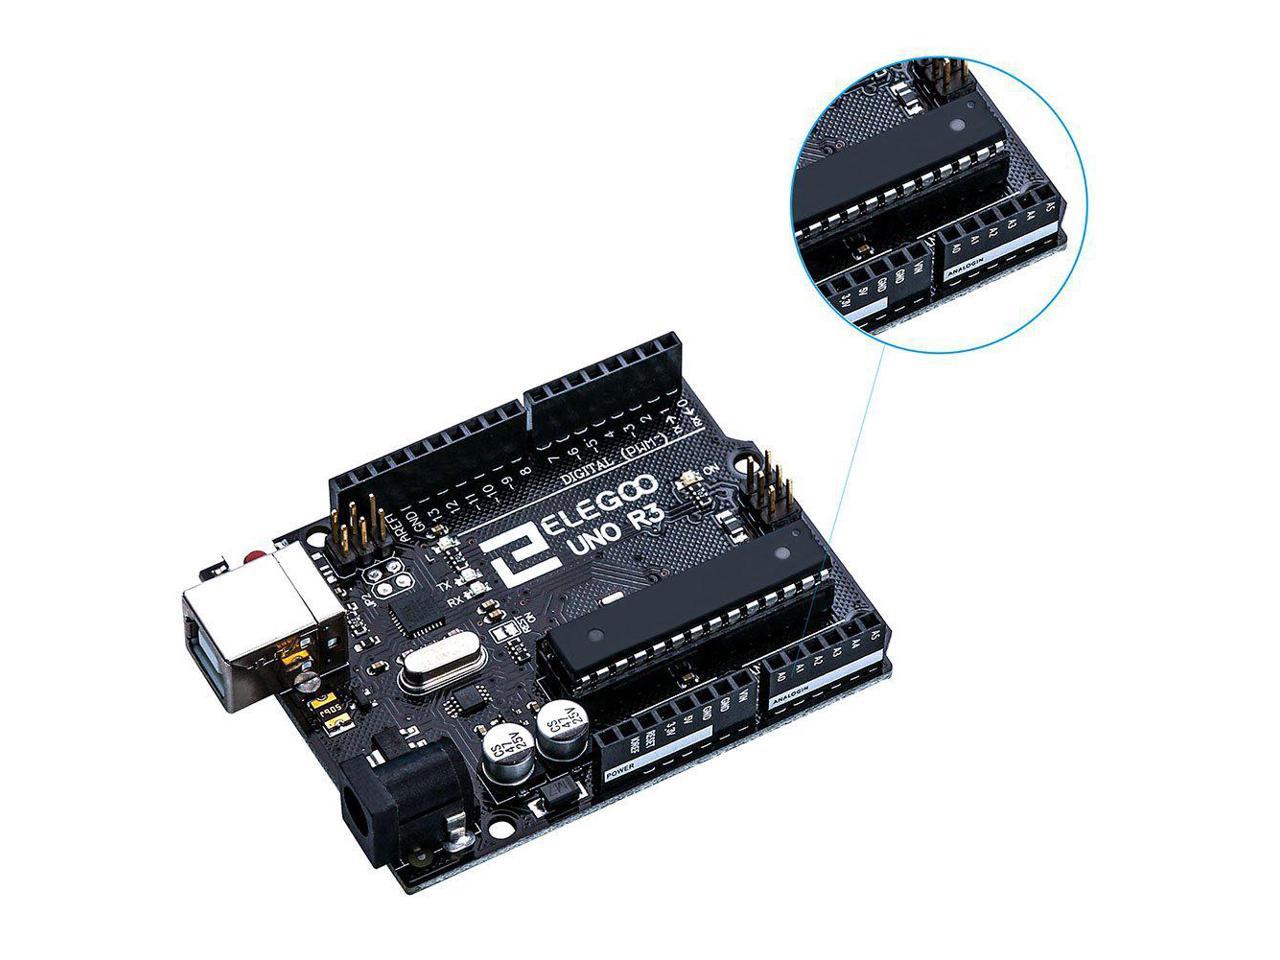 Sunigo 2pcs UNO R3 ATmega328P ATMEGA16U2 Development Board Compatible with UNO R3 Arduino 